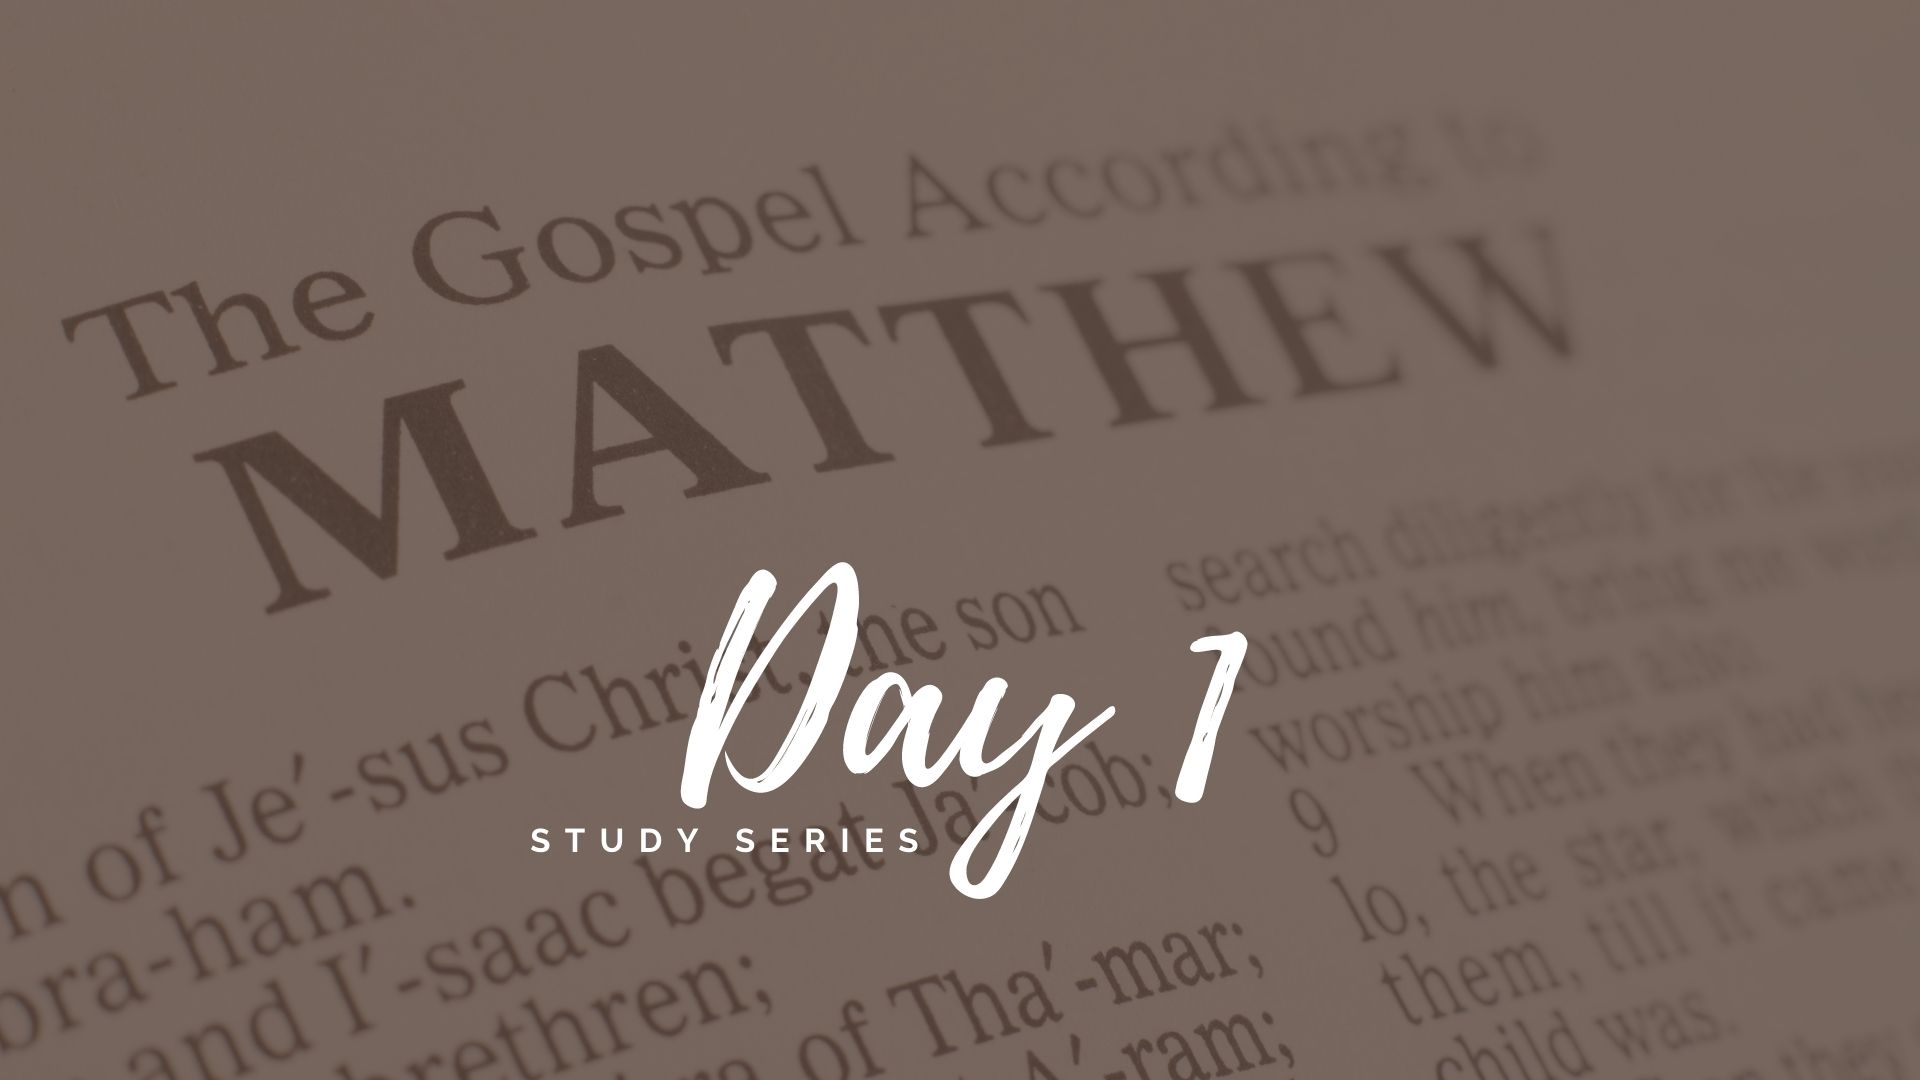 The Gospel of Matthew Day 1